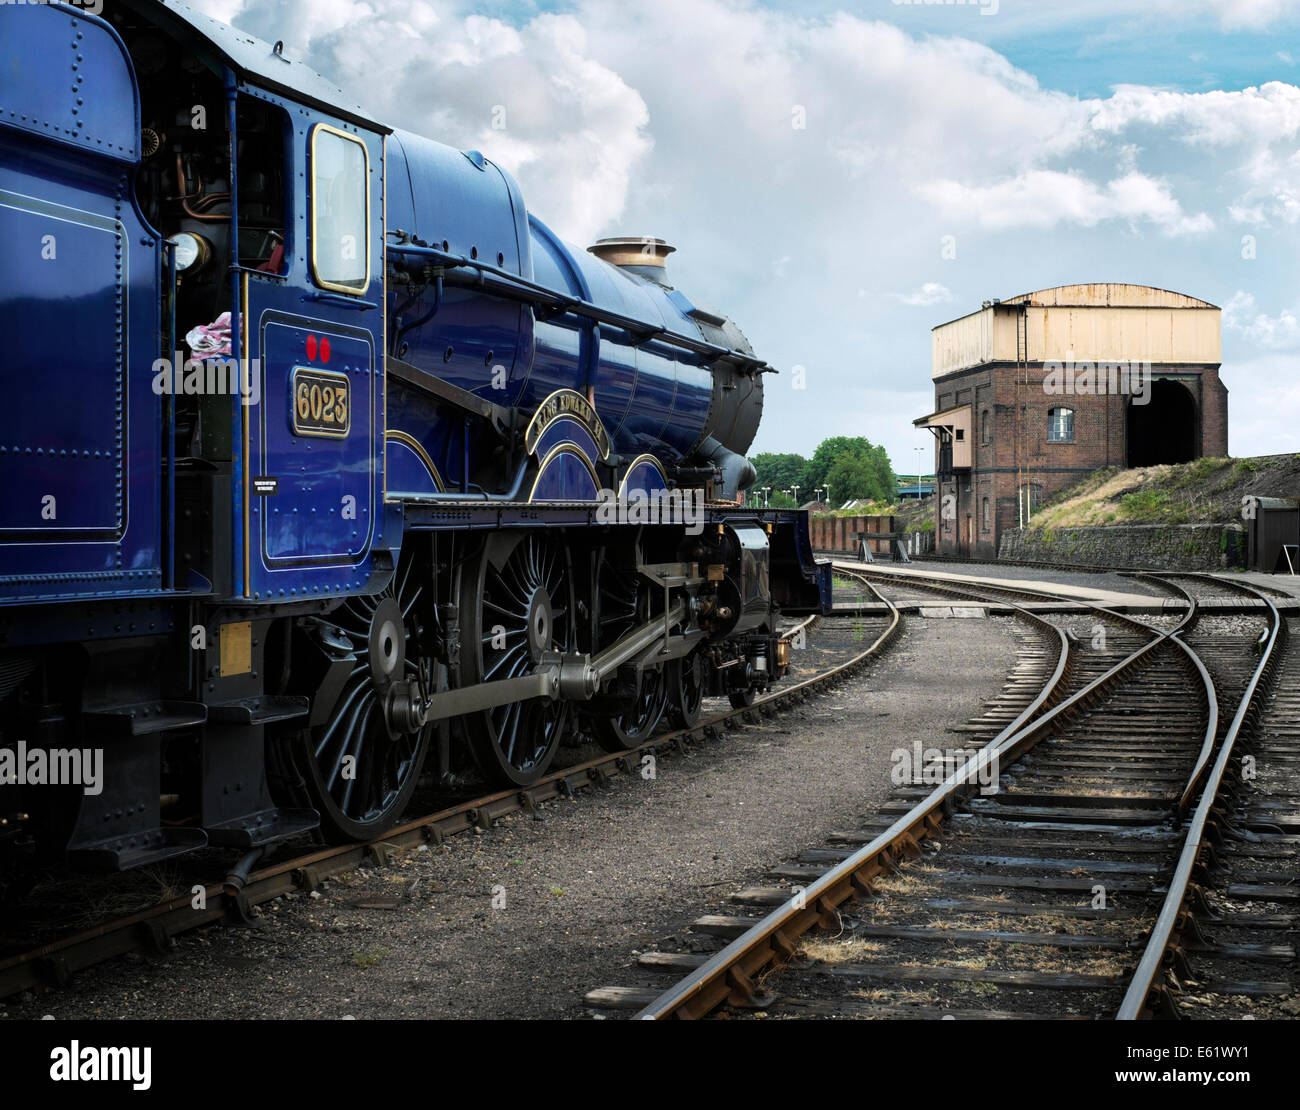 Ex classe King magnifiquement restauré de Great Western Railway locomotive 'le roi Édouard II' aucun 6023 stationné à Didcot railway centre Banque D'Images